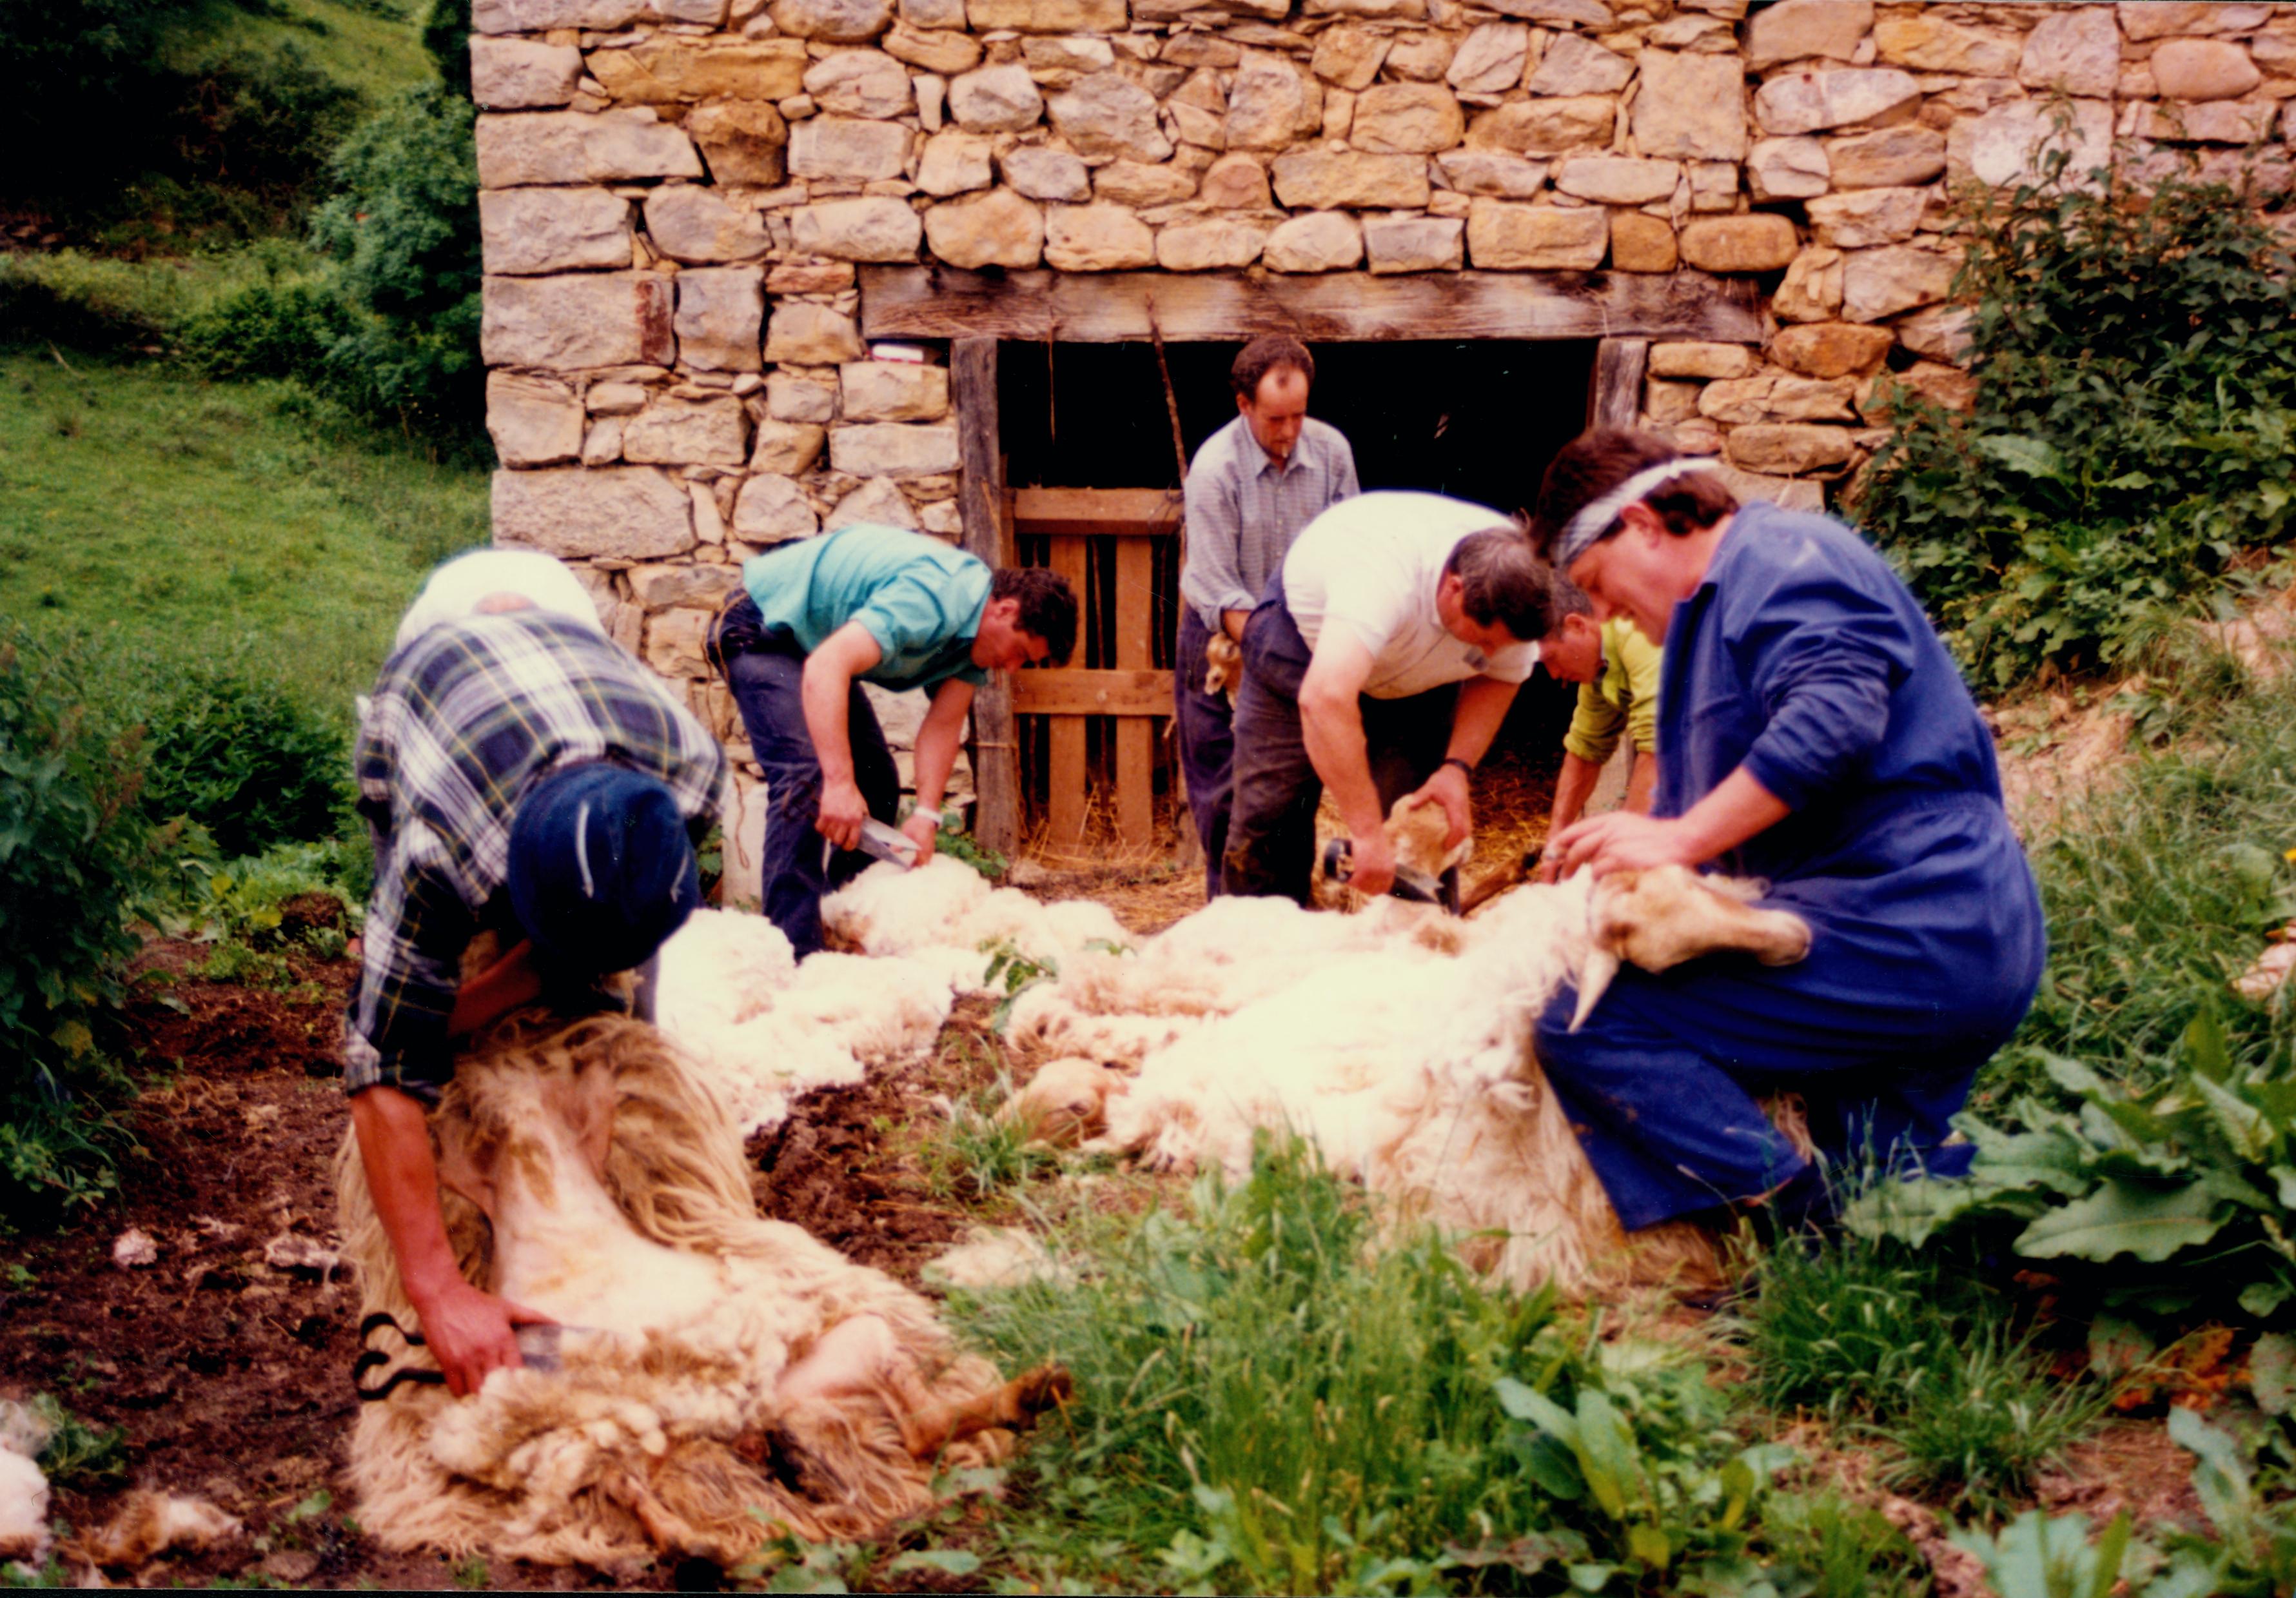 Sheep shearing. Carranza (Bizkaia), 1998. Miguel Sabino Díaz